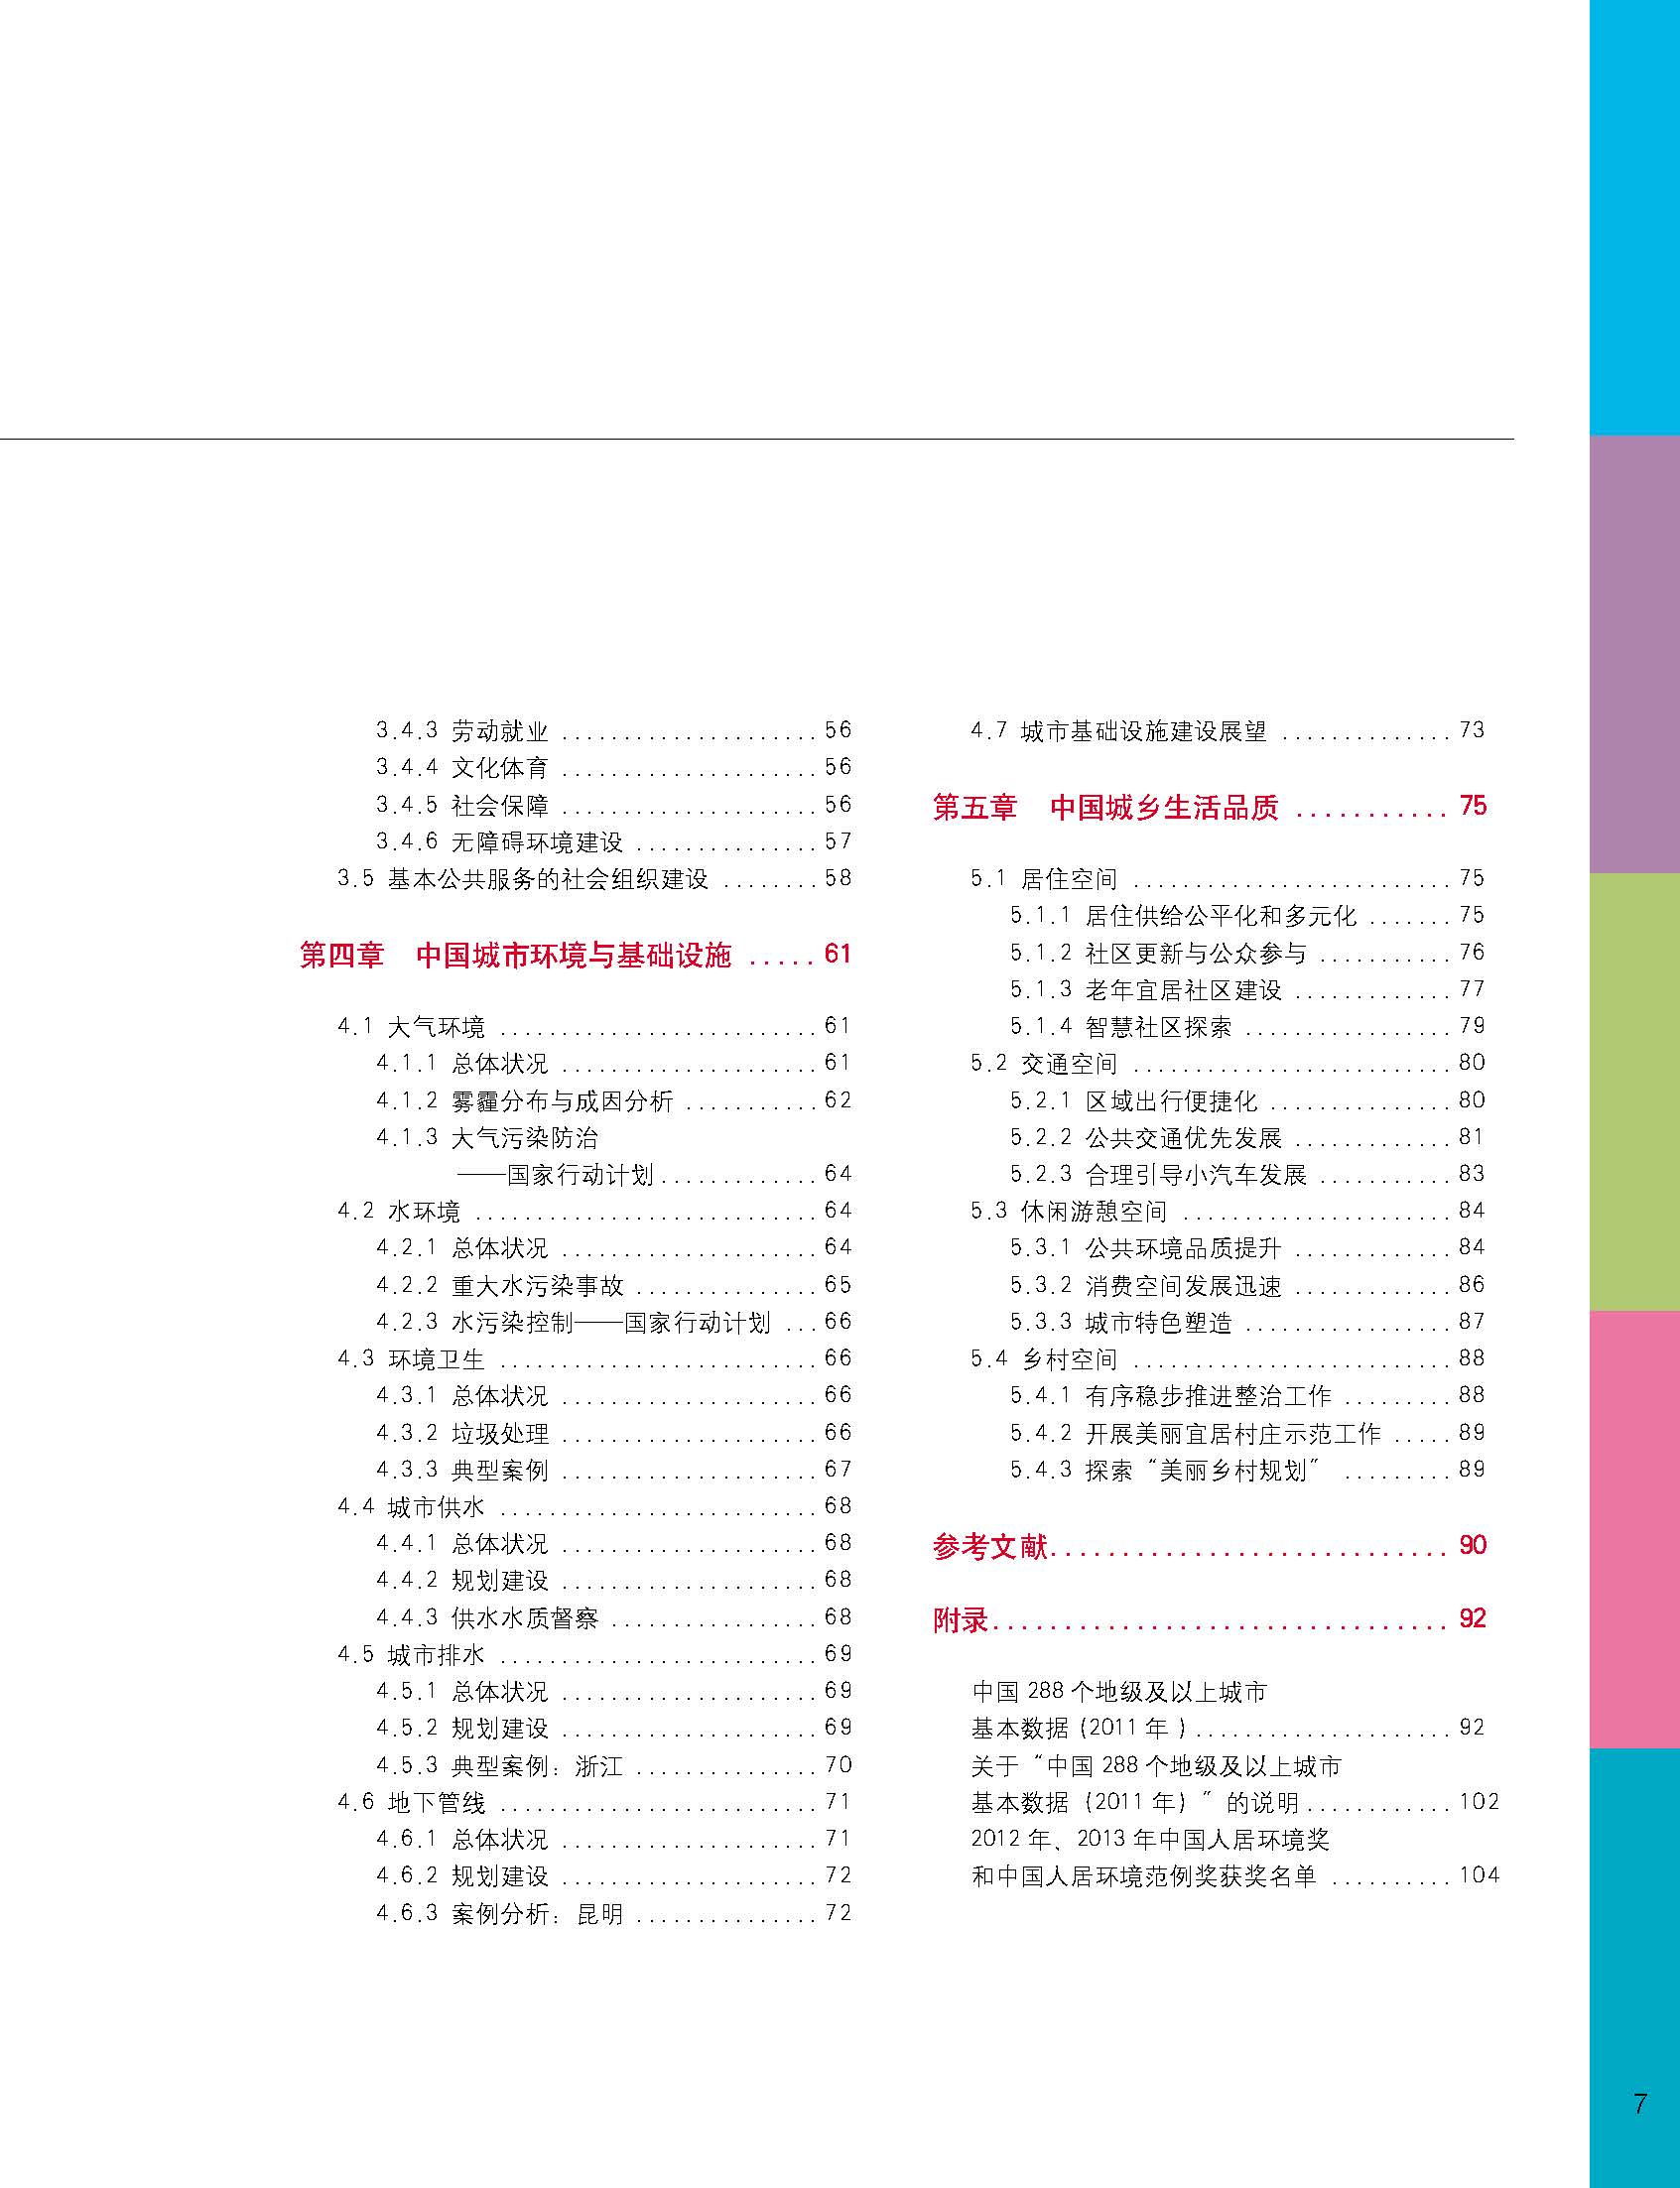 状况报告2014-2015中文 8.jpg